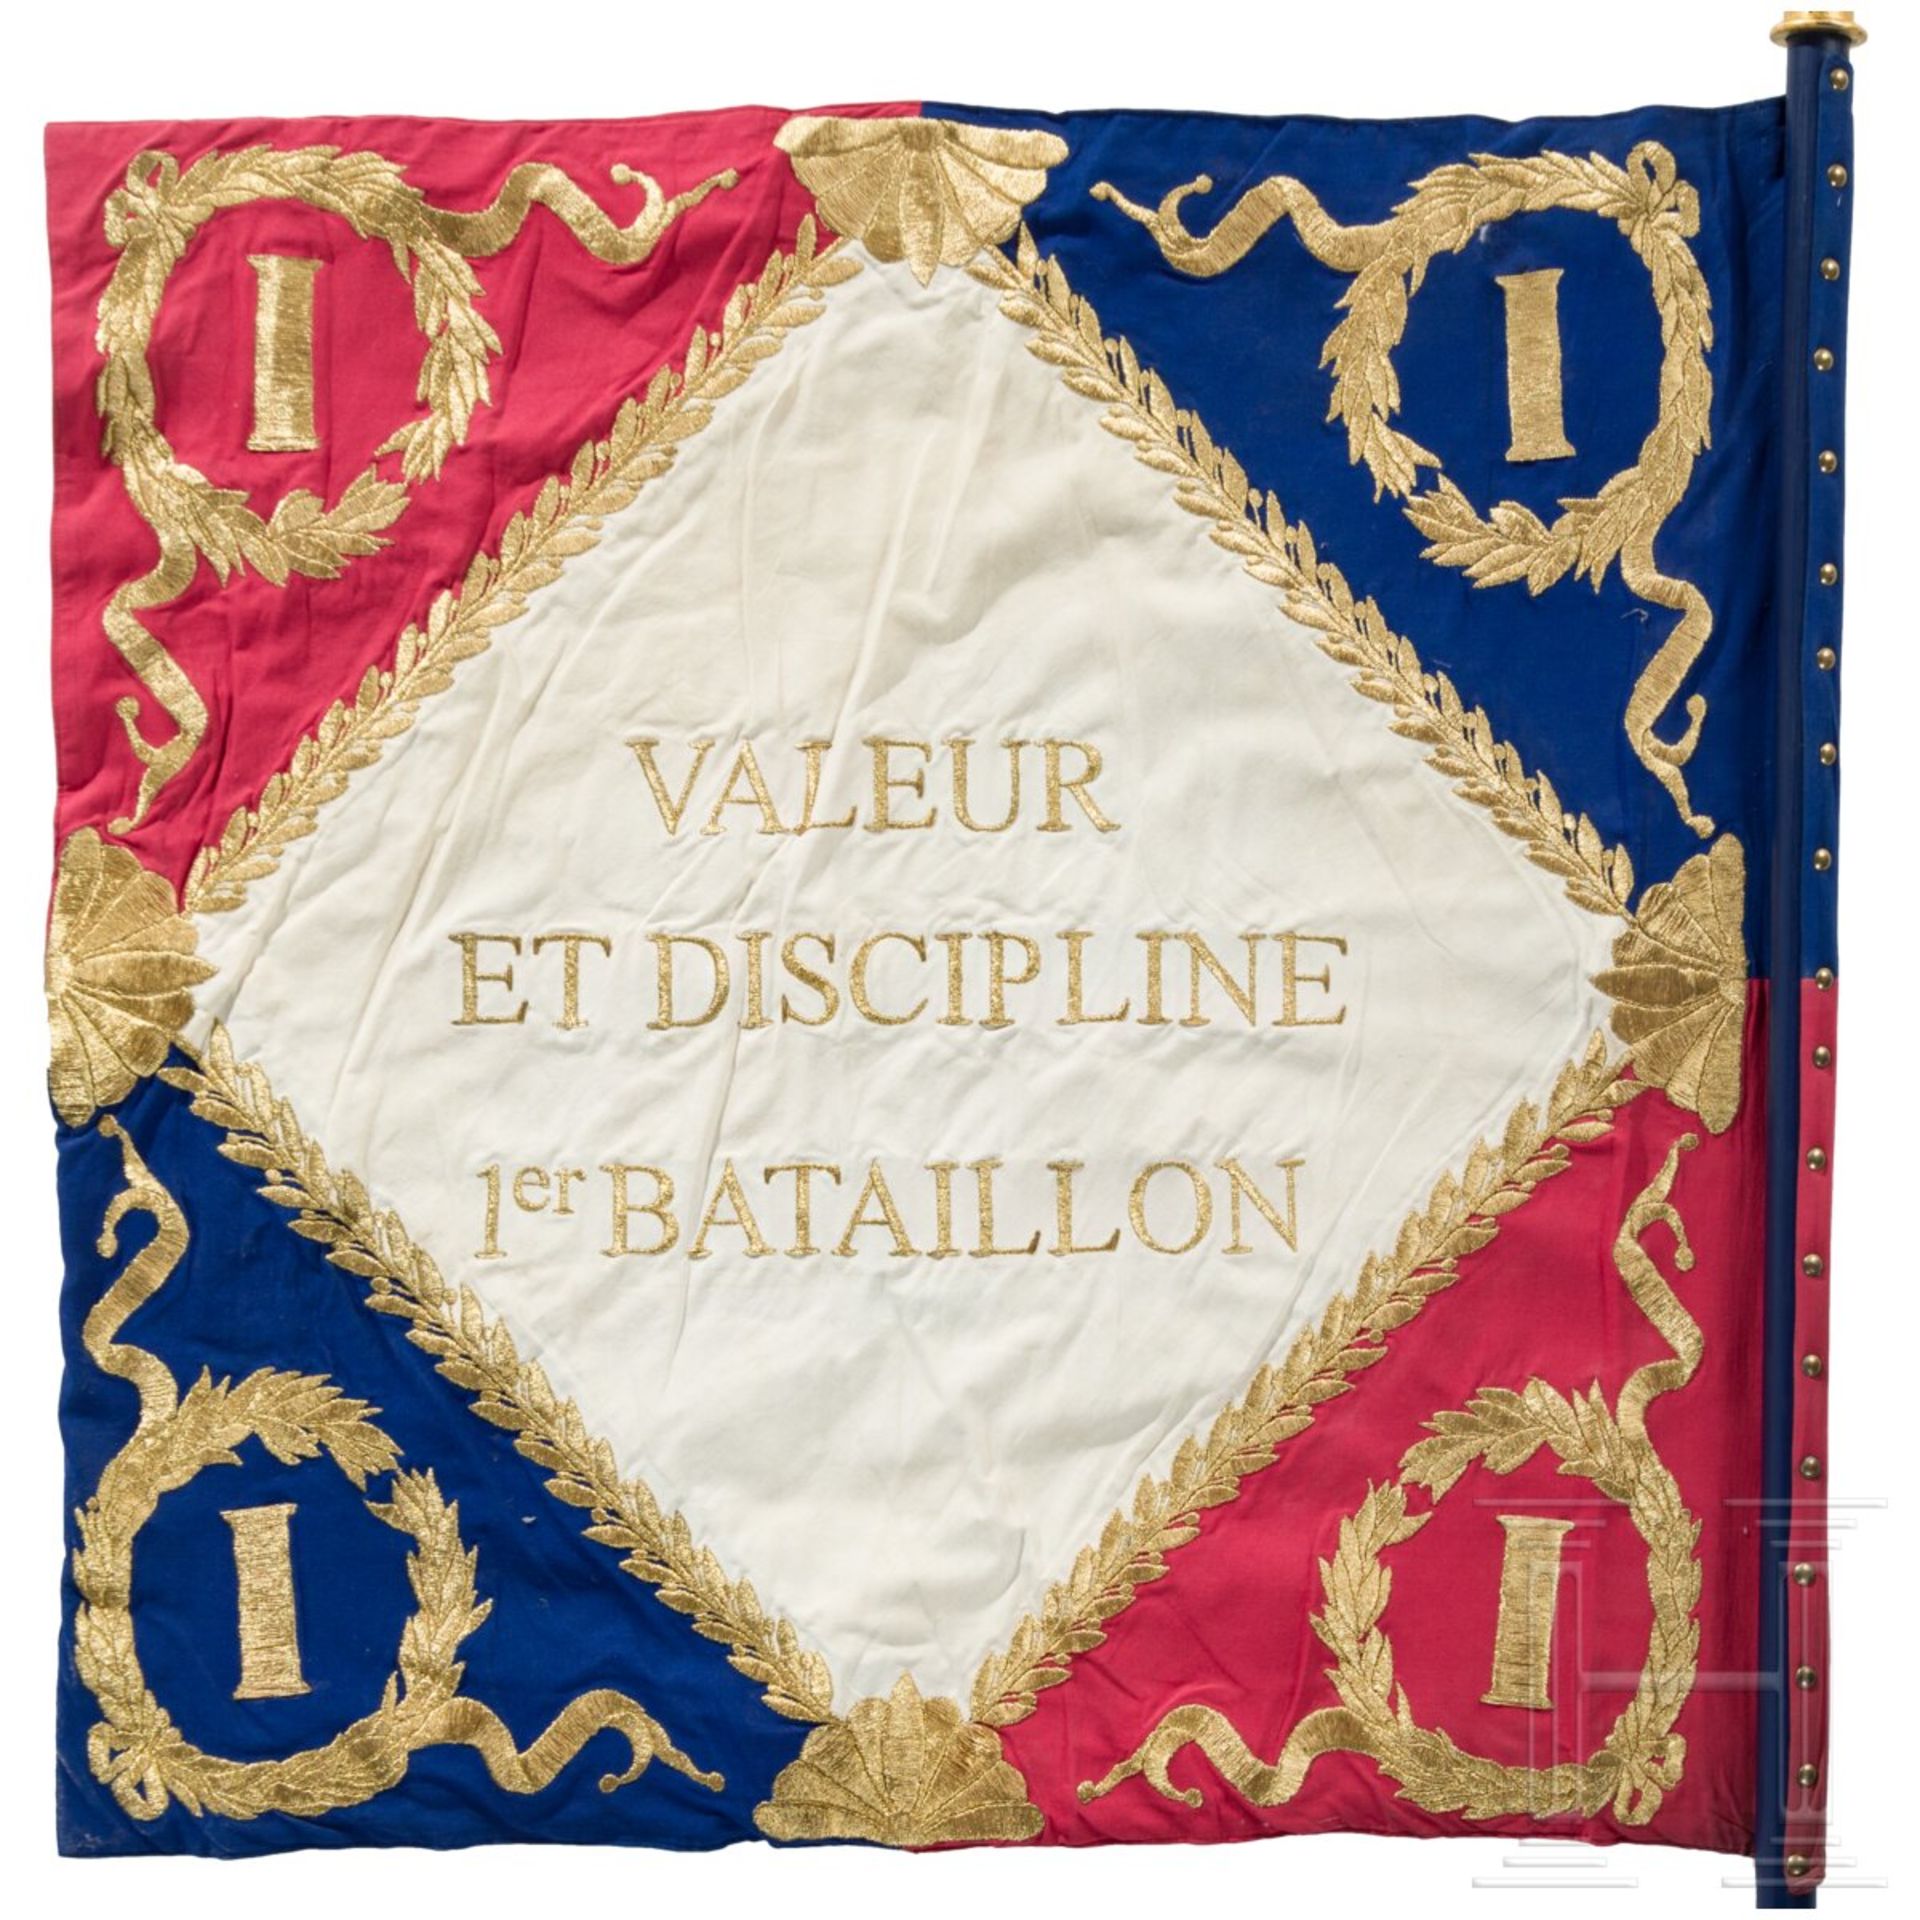 Garde impériale, 1er régiment des chasseurs à pied - Fahne mit Adler, 20. Jhdt. - Image 4 of 6